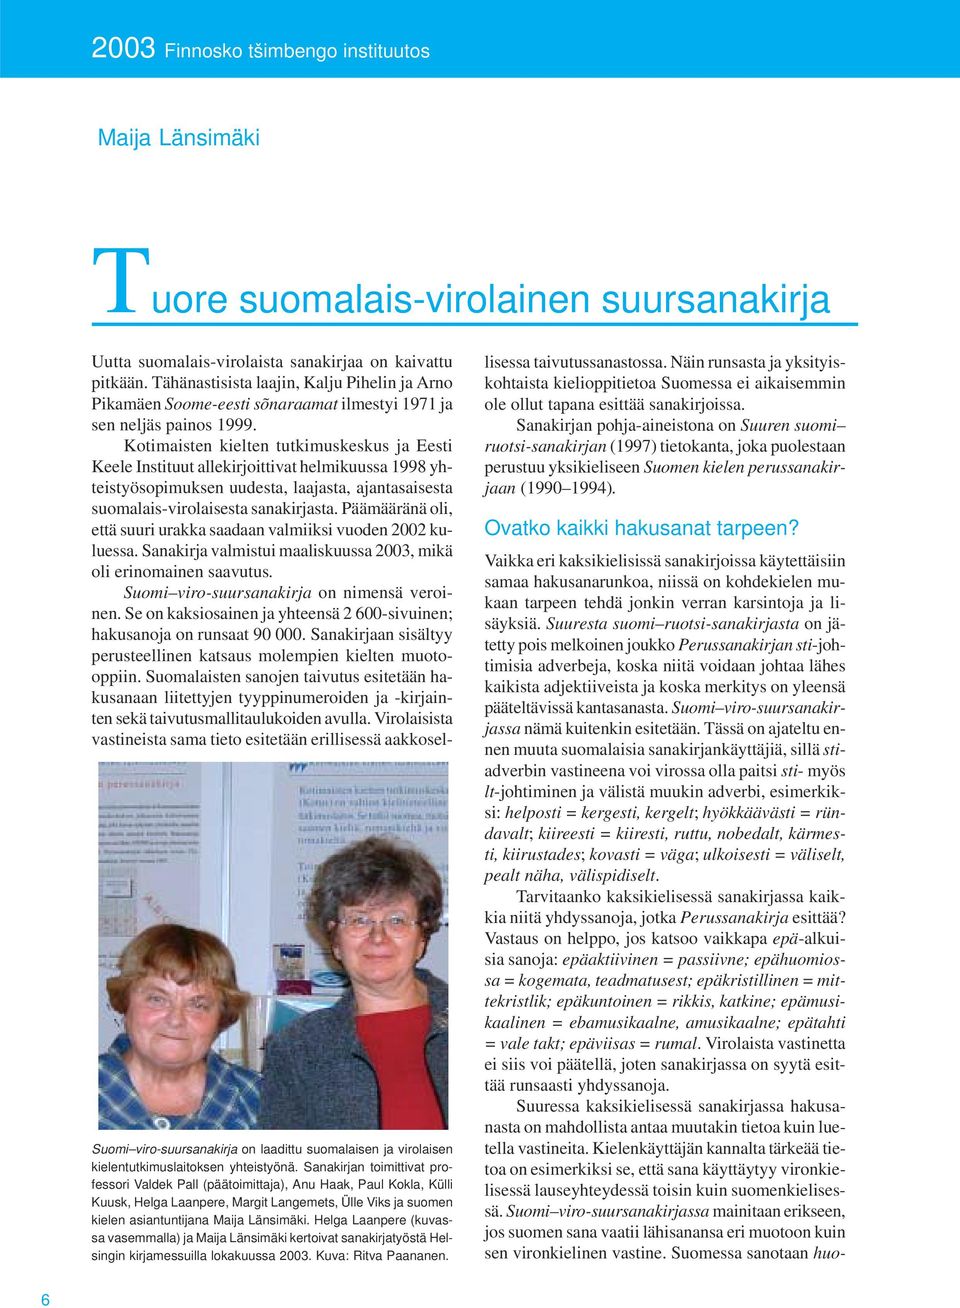 Helga Laanpere (kuvassa vasemmalla) ja Maija Länsimäki kertoivat sanakirjatyöstä Helsingin kirjamessuilla lokakuussa 2003. Kuva: Ritva Paananen.